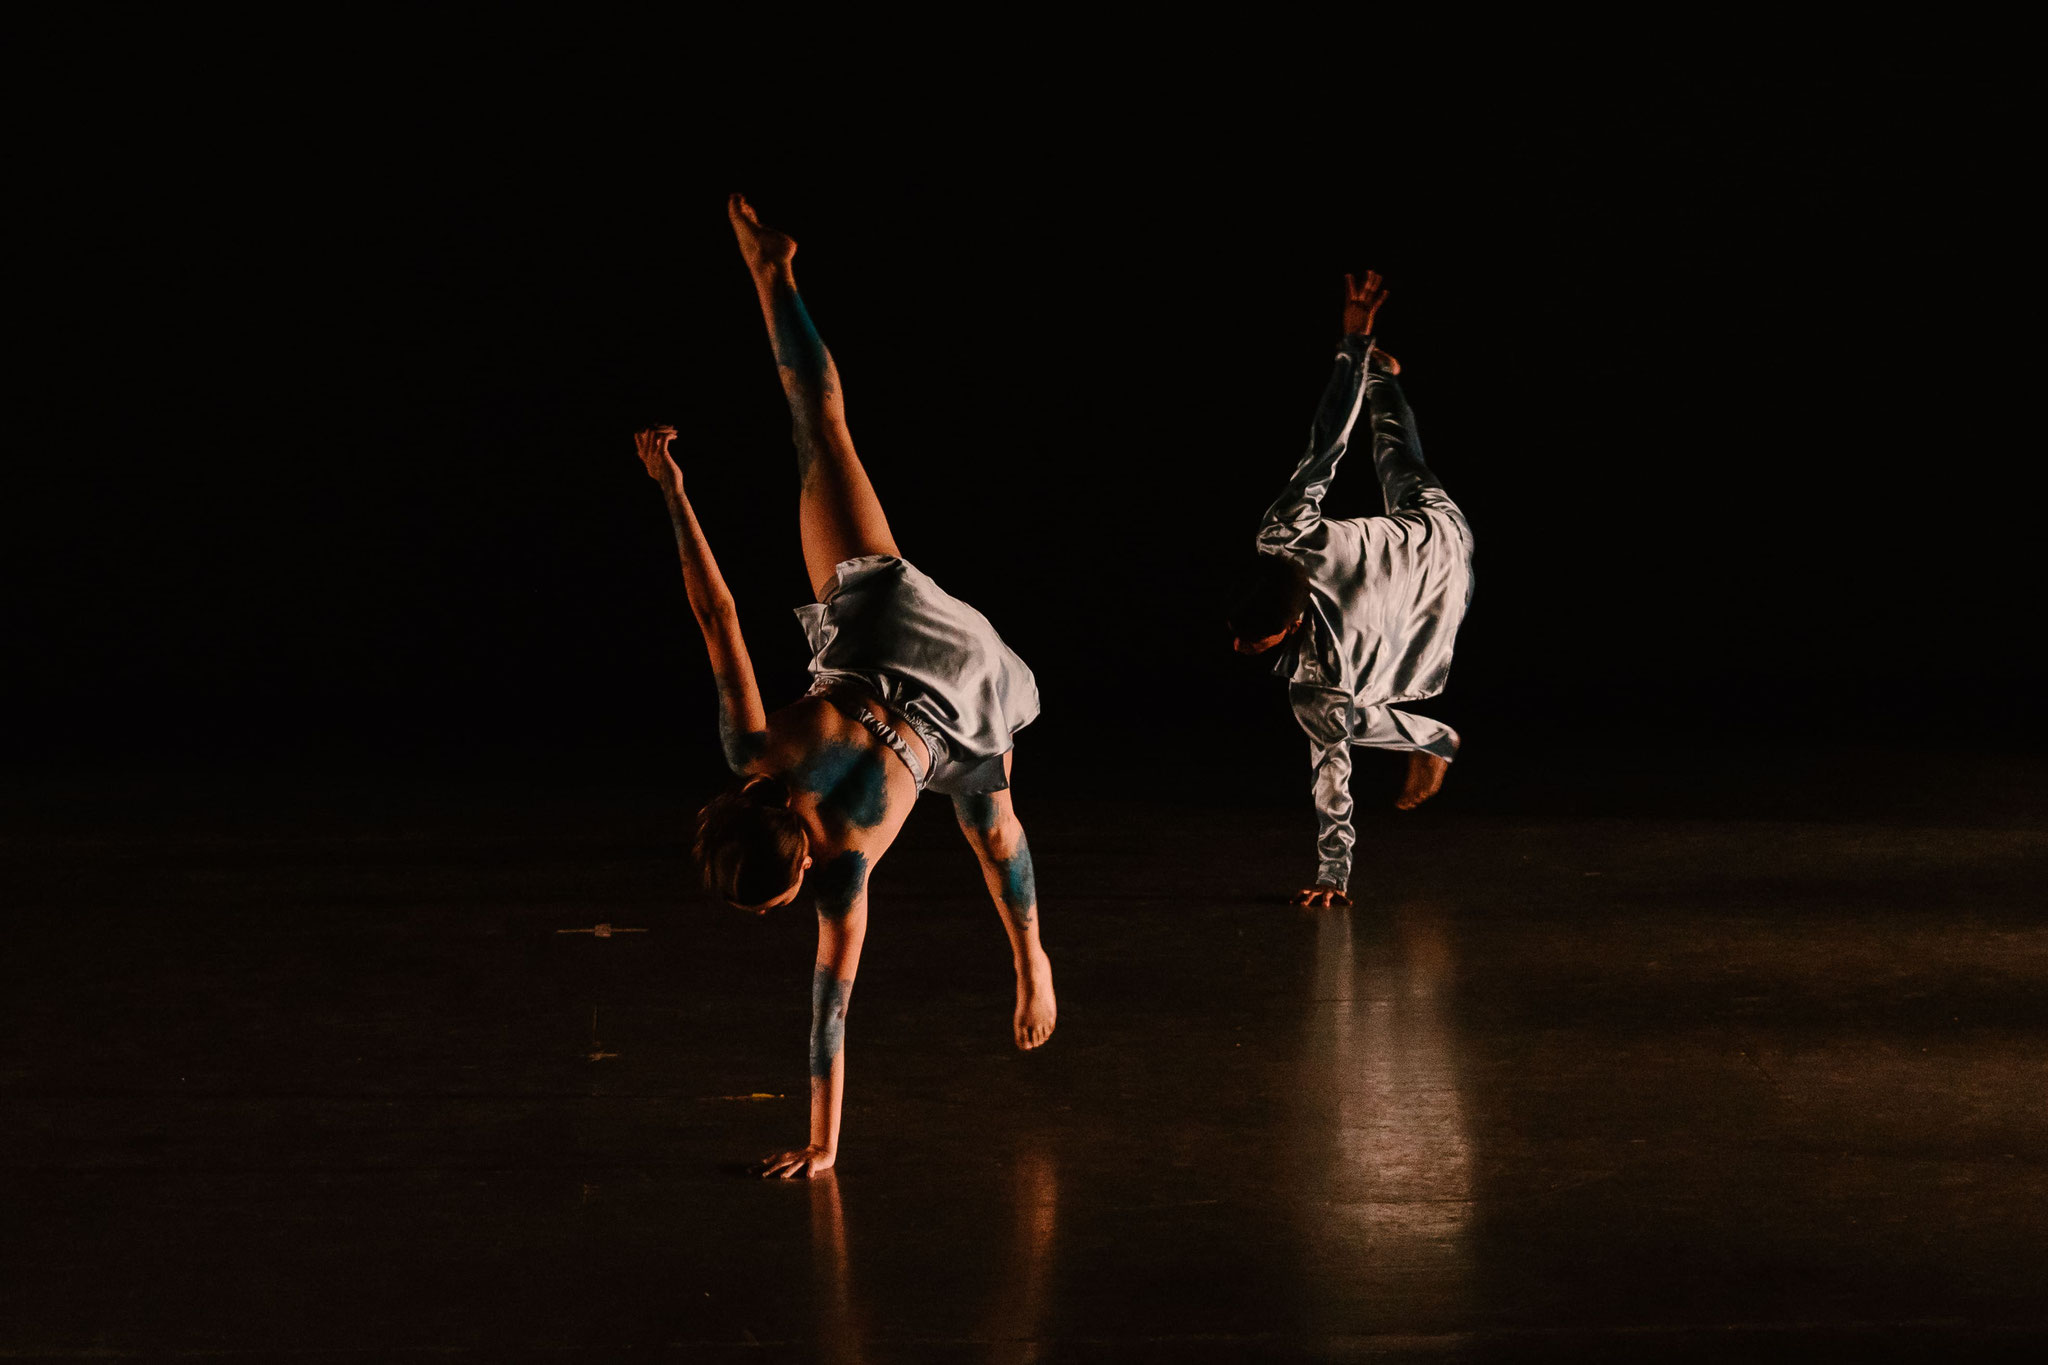 Presentación de danza "Mortel". Estudiantes de 6.° semestre de Bachillerato en Artes y Humanidades en Danza